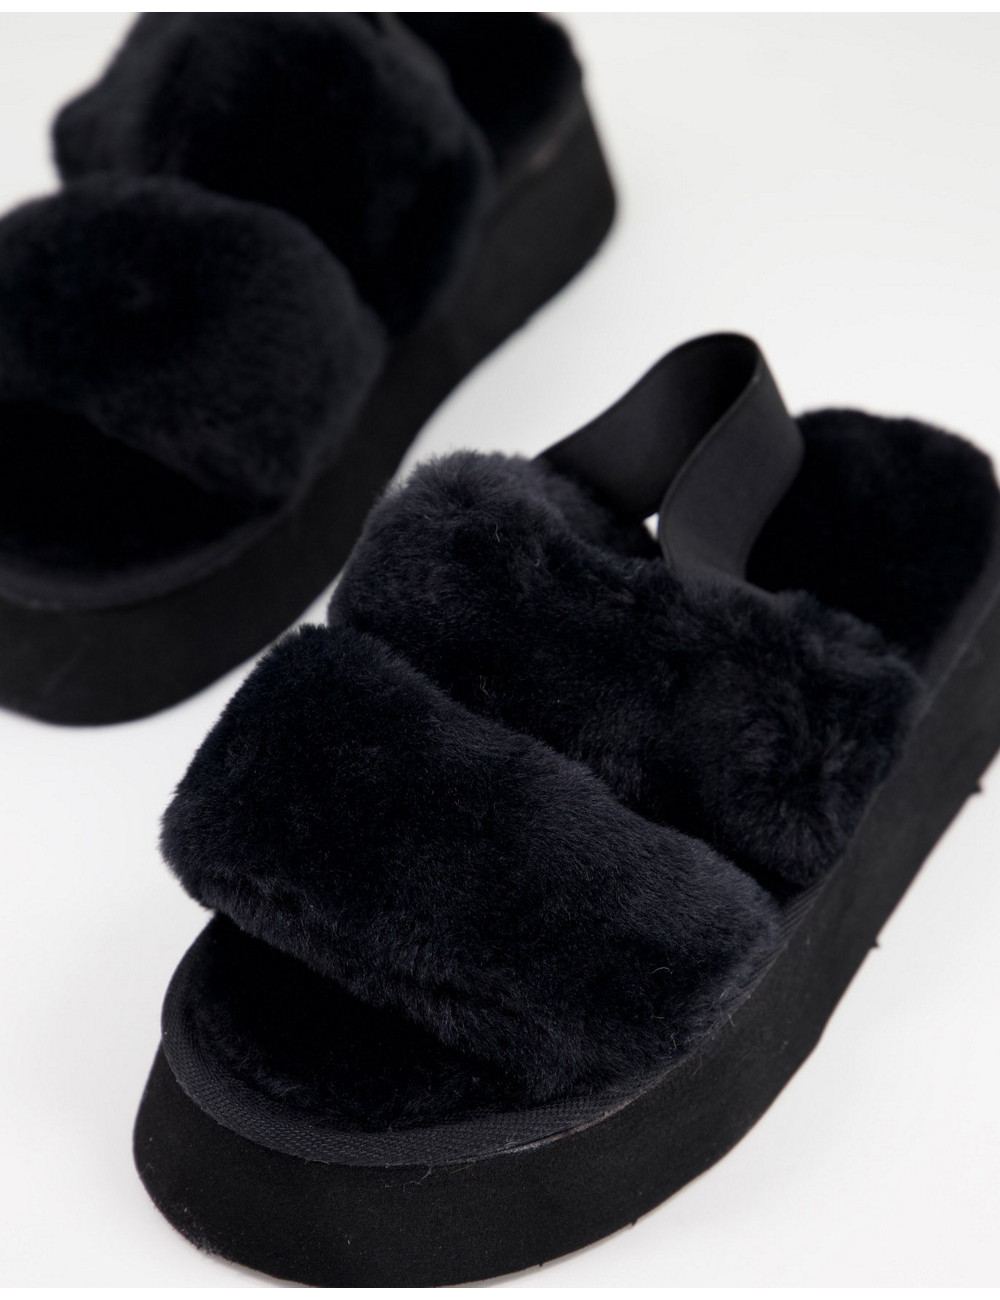 Ego Tata slippers in black